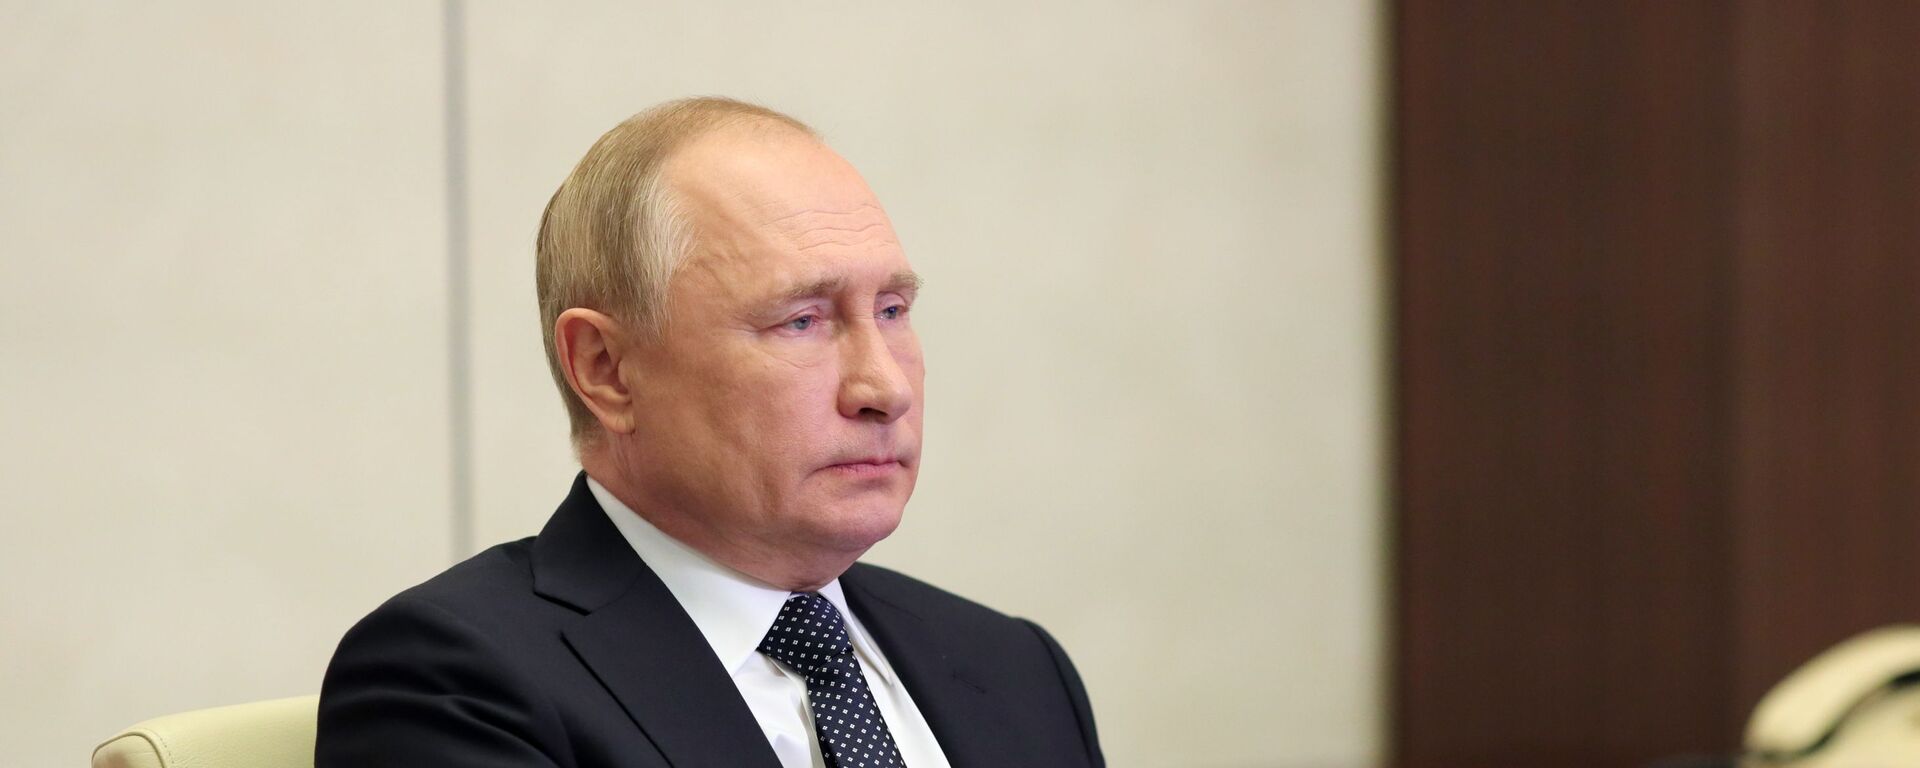 الرئيس الروسي فلاديمير بوتين خلال مشاركته في مؤتمر قمة مجموعة العشرين، روسيا 31 أكتوبر 2021 - سبوتنيك عربي, 1920, 10.11.2021